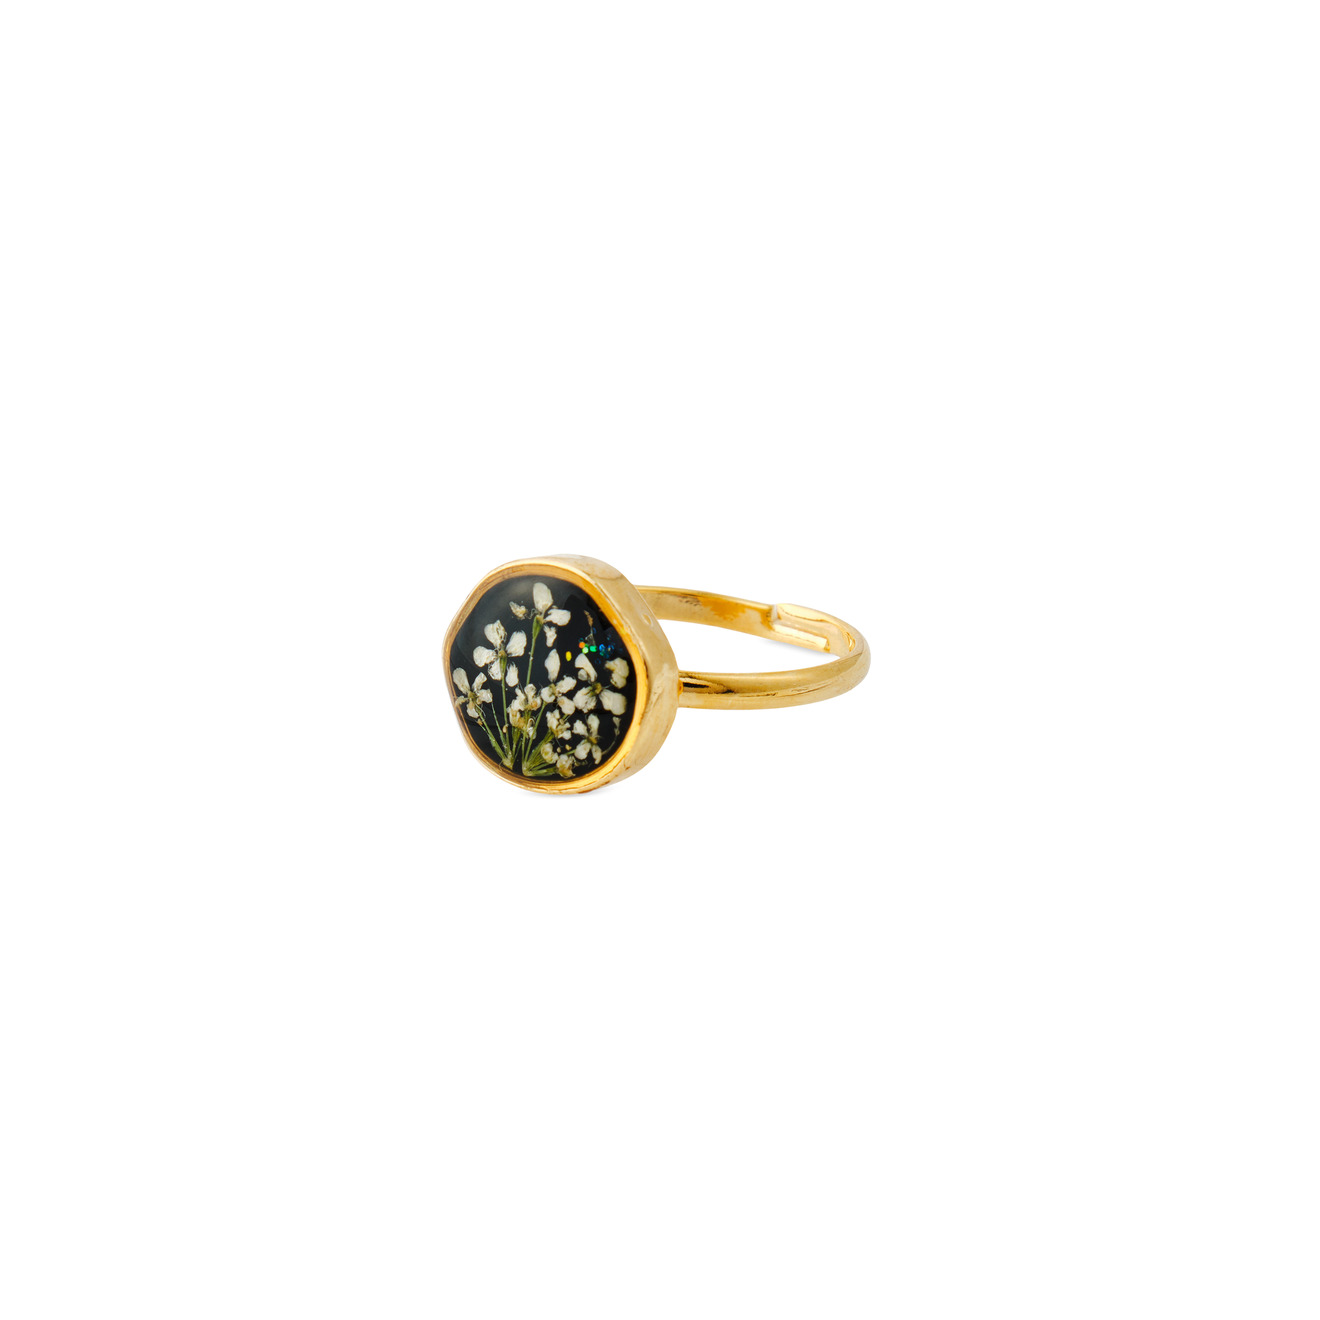 wisteria gems золотистое колье с натуральным жемчугом и зелеными бусинами Wisteria Gems Маленькое круглое золотистое черное кольцо с белыми цветками